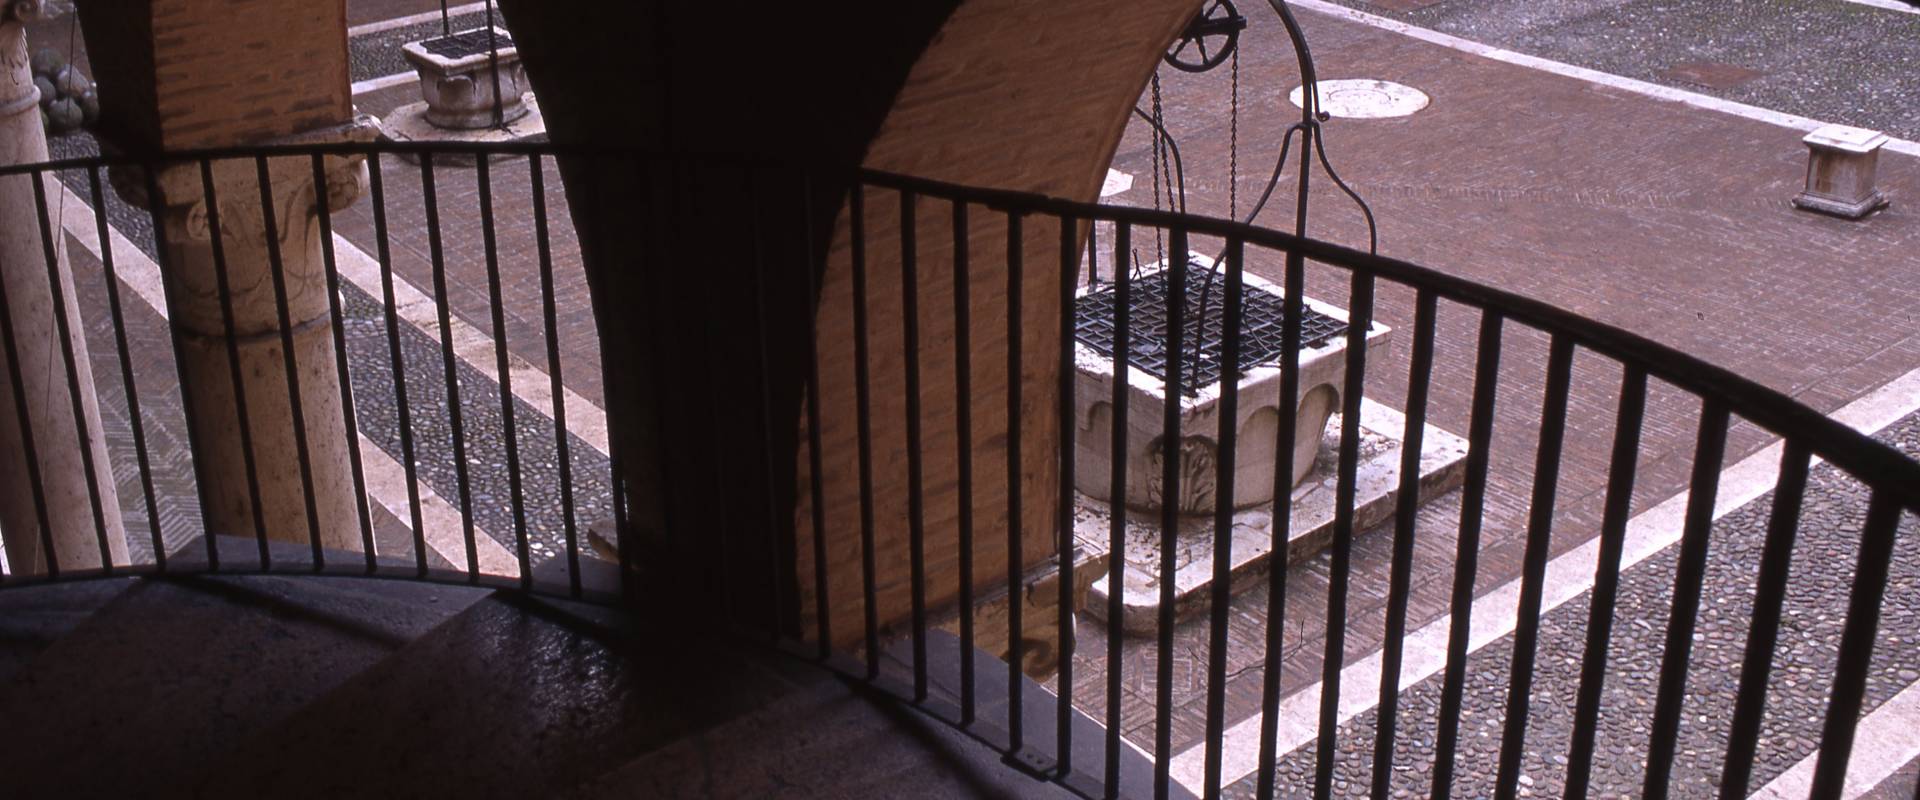 castello Estense, cortile visto dallo scalone elicoidale foto di zappaterra